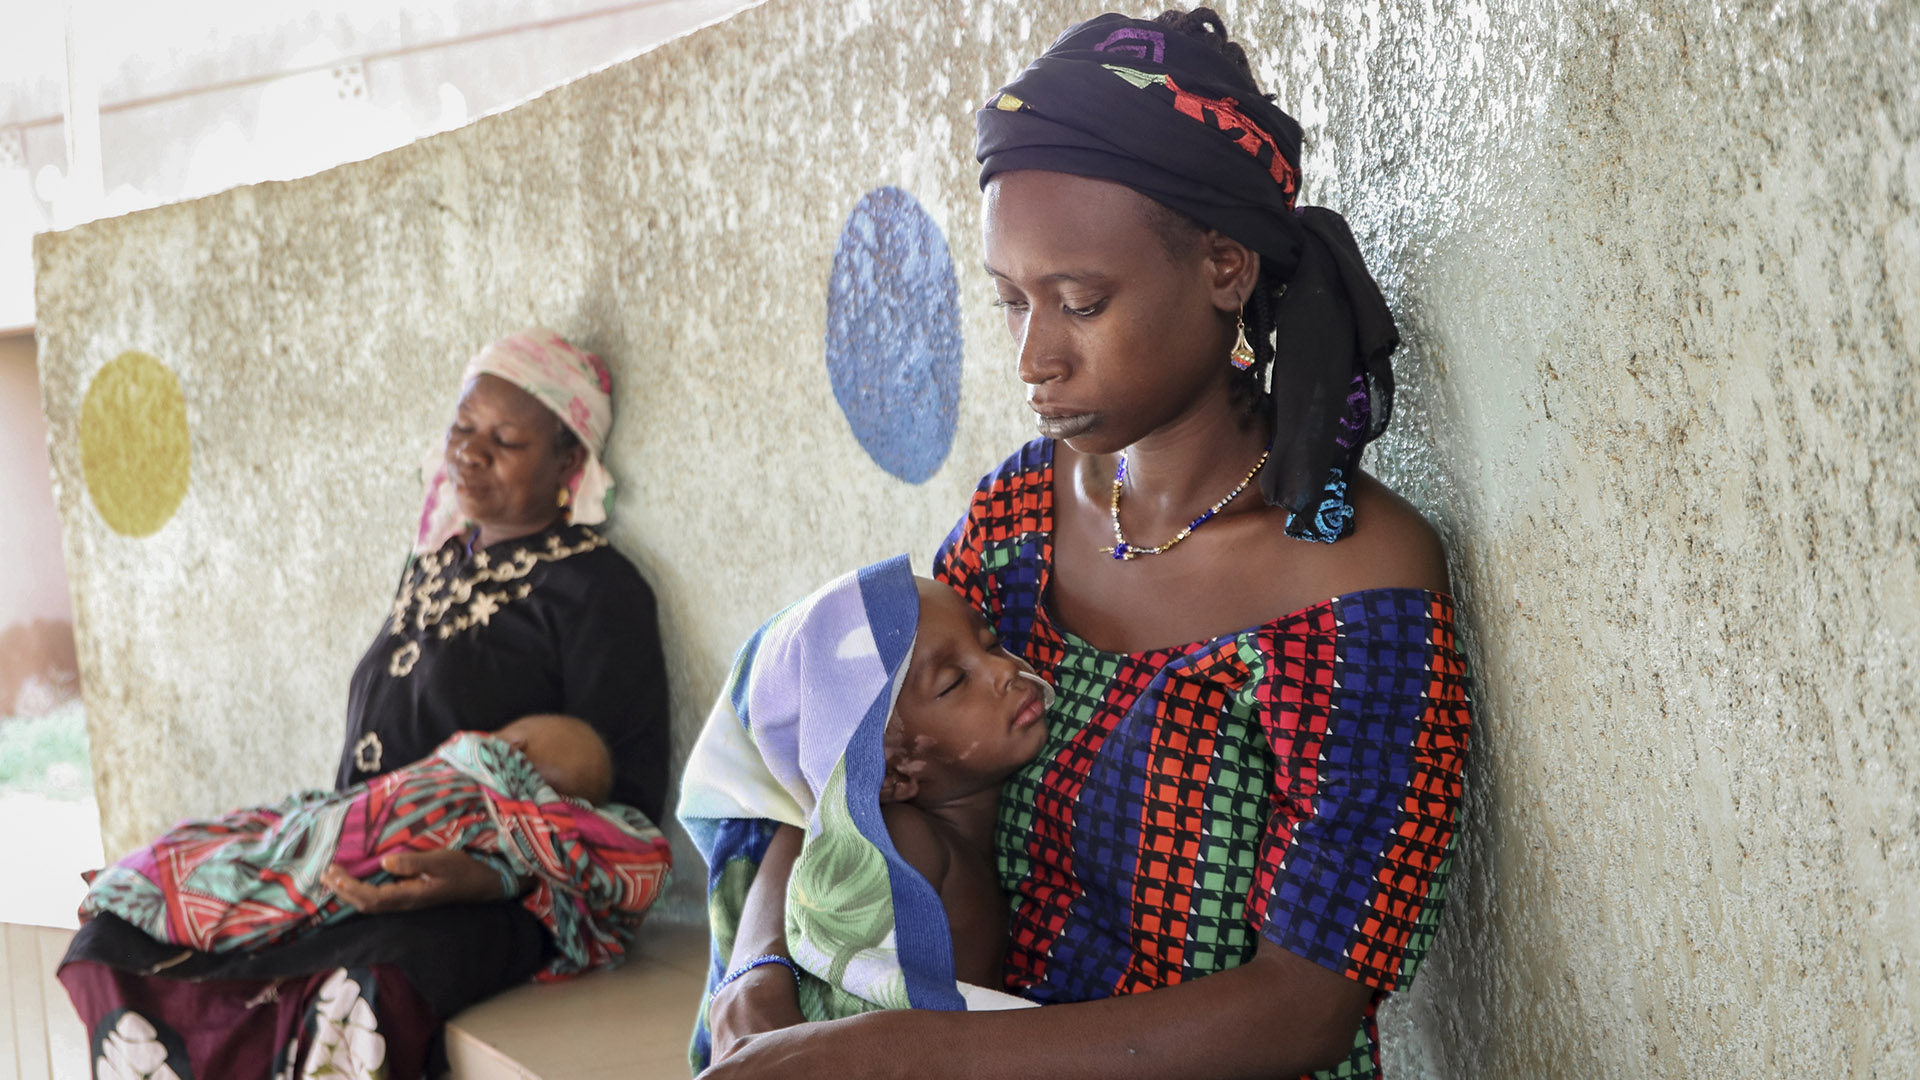 Fatima Li, de 20 años, en primer plano, sostiene a su hijo de dos años, Hama Sow, mientras es tratado con una sonda de alimentación para la desnutrición, mientras Hadiara Ouedraogo, a la izquierda, se sienta con su nieta, Fatimata Ouedrago, de 2 años, que tiene un edema debido a una grave desnutrición, en la Universidad Yalgado Ouedraogo de Uagadugú (Burkina Faso) (AP Photo/Sam Mednick)